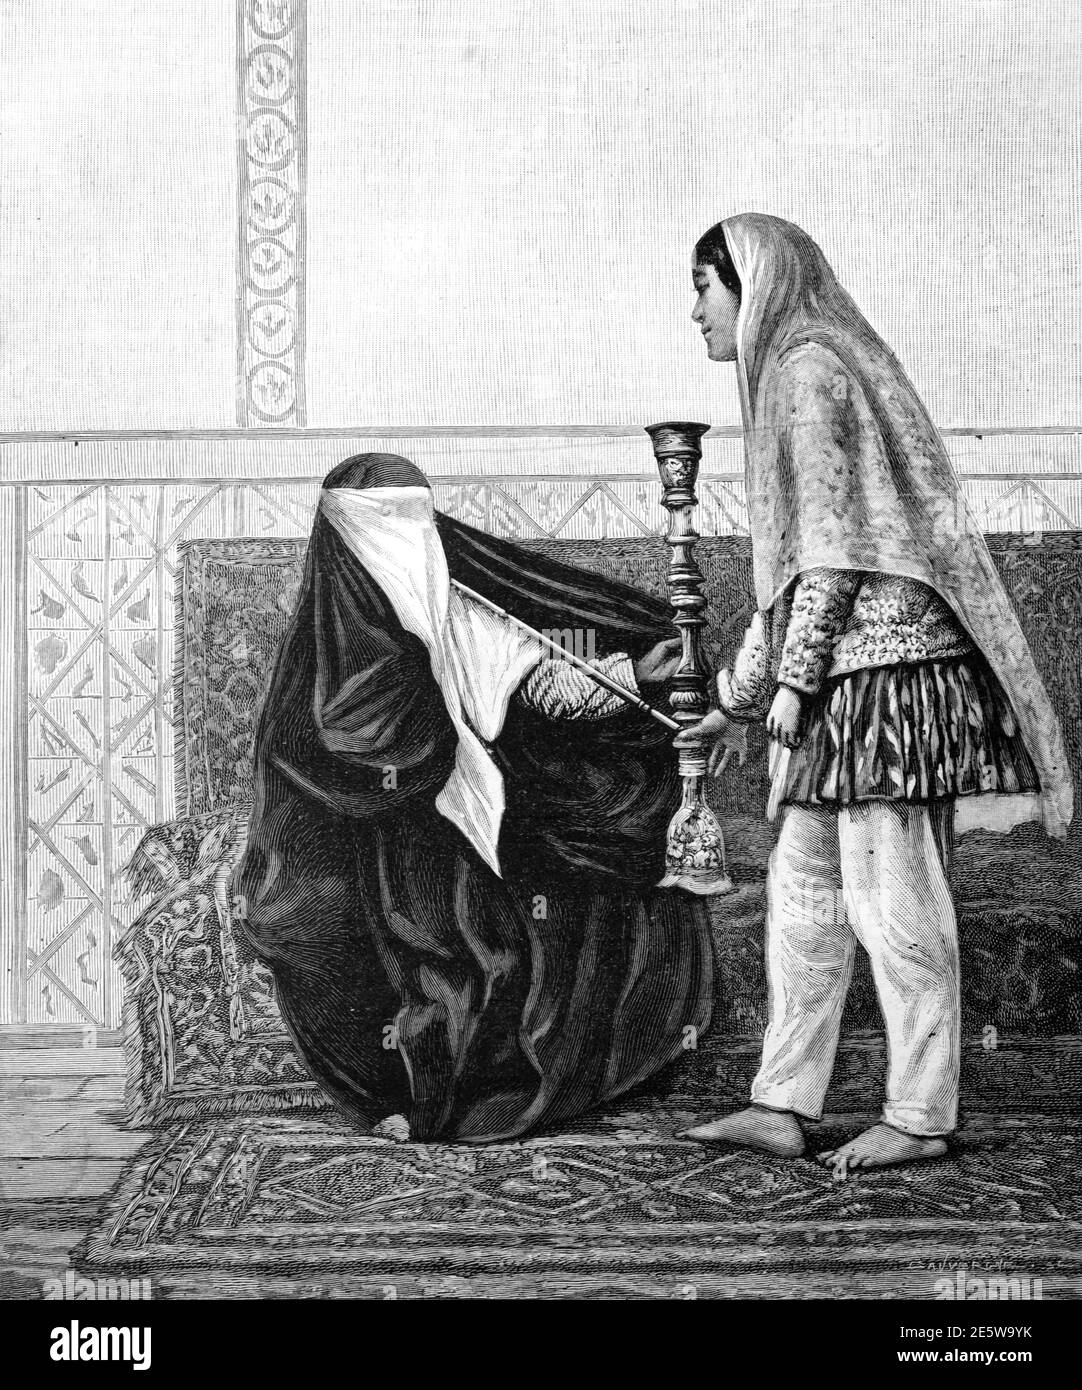 Persian or Iranian Woman Wearing Niqab & Smoking a Shisha, Water Pipe, Hookah or Nargjhile & Slave or Maid Servant Shiraz Iran 1903 Vintage Illustration or Engraving Stock Photo